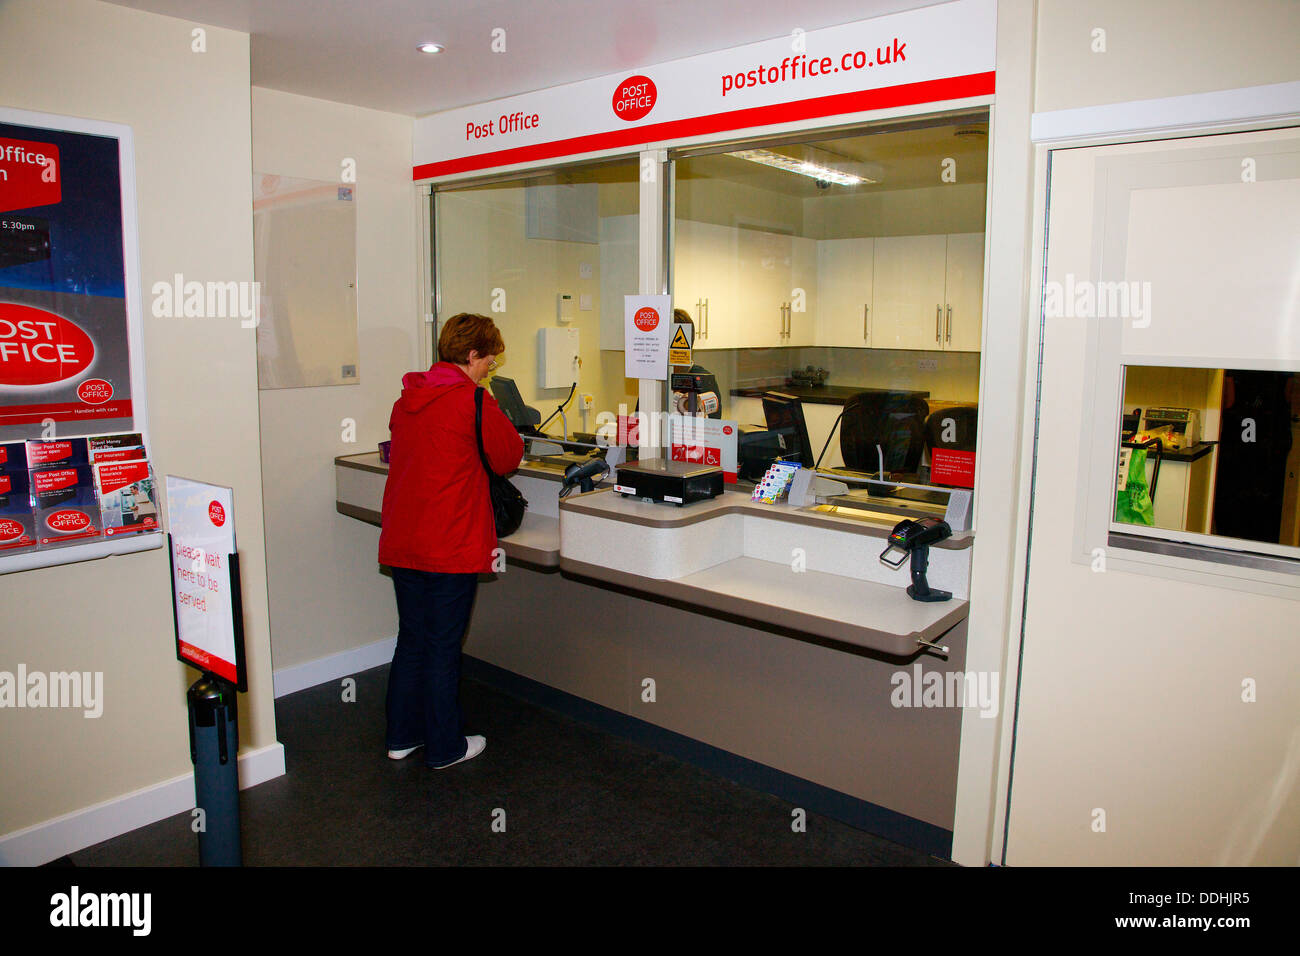 Woman in Red Jacket presso un ufficio postale contatore Foto Stock